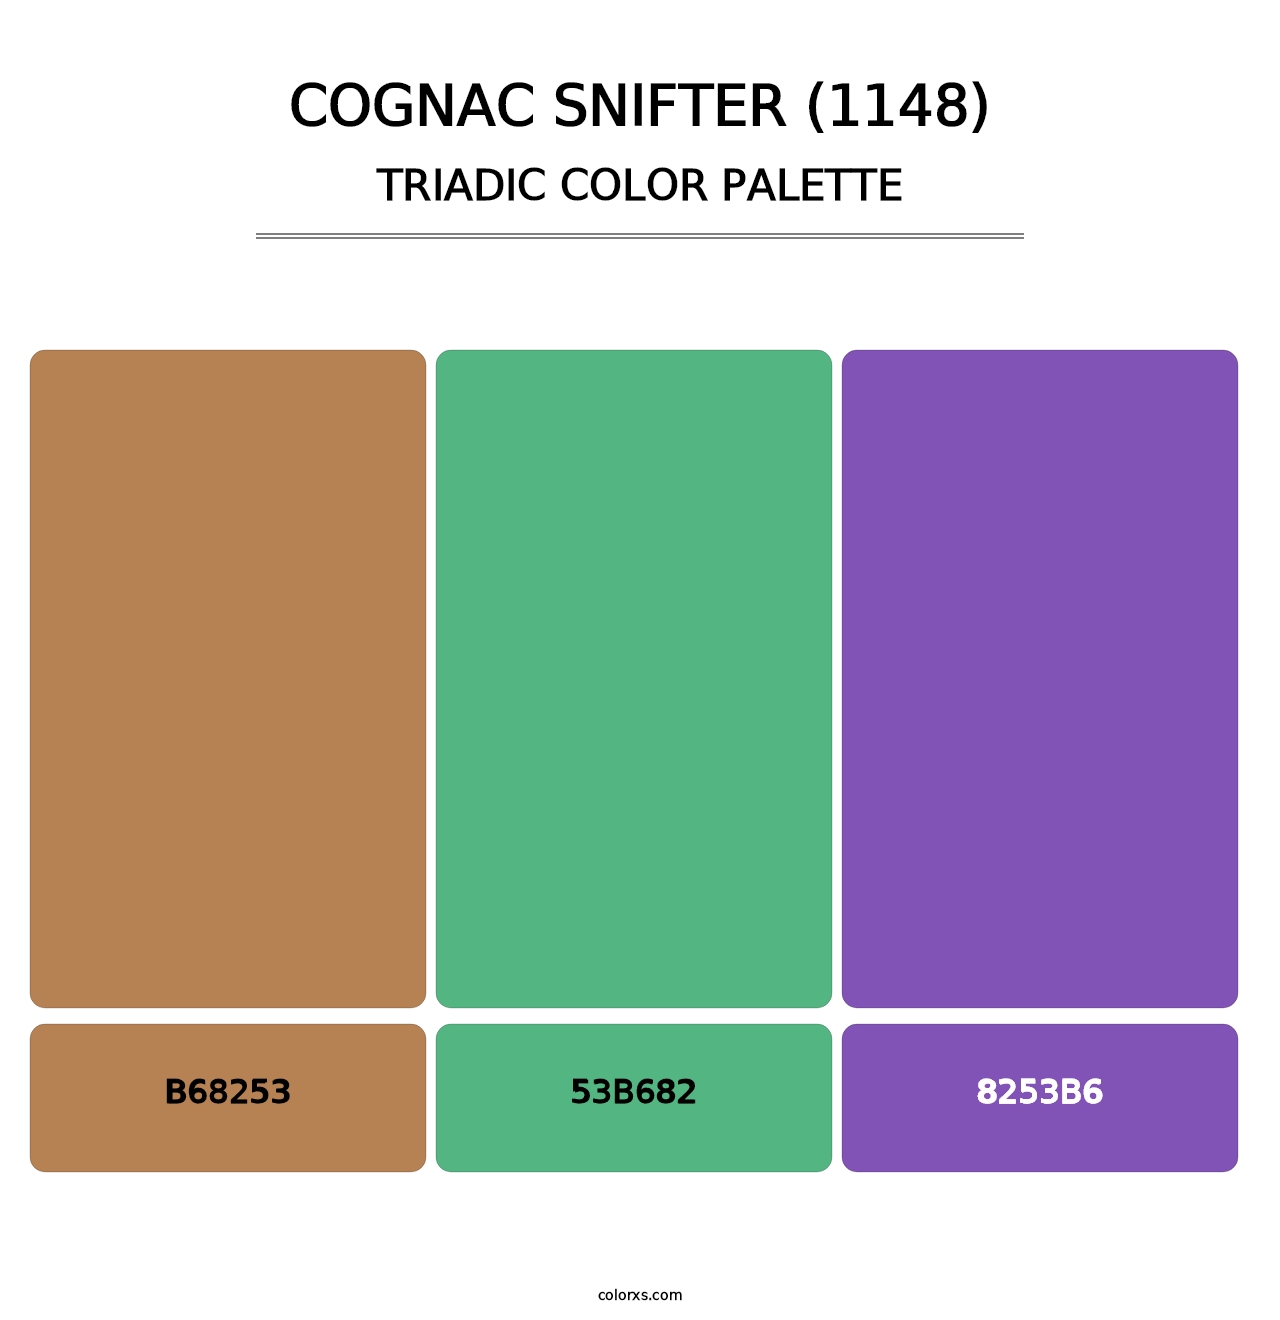 Cognac Snifter (1148) - Triadic Color Palette